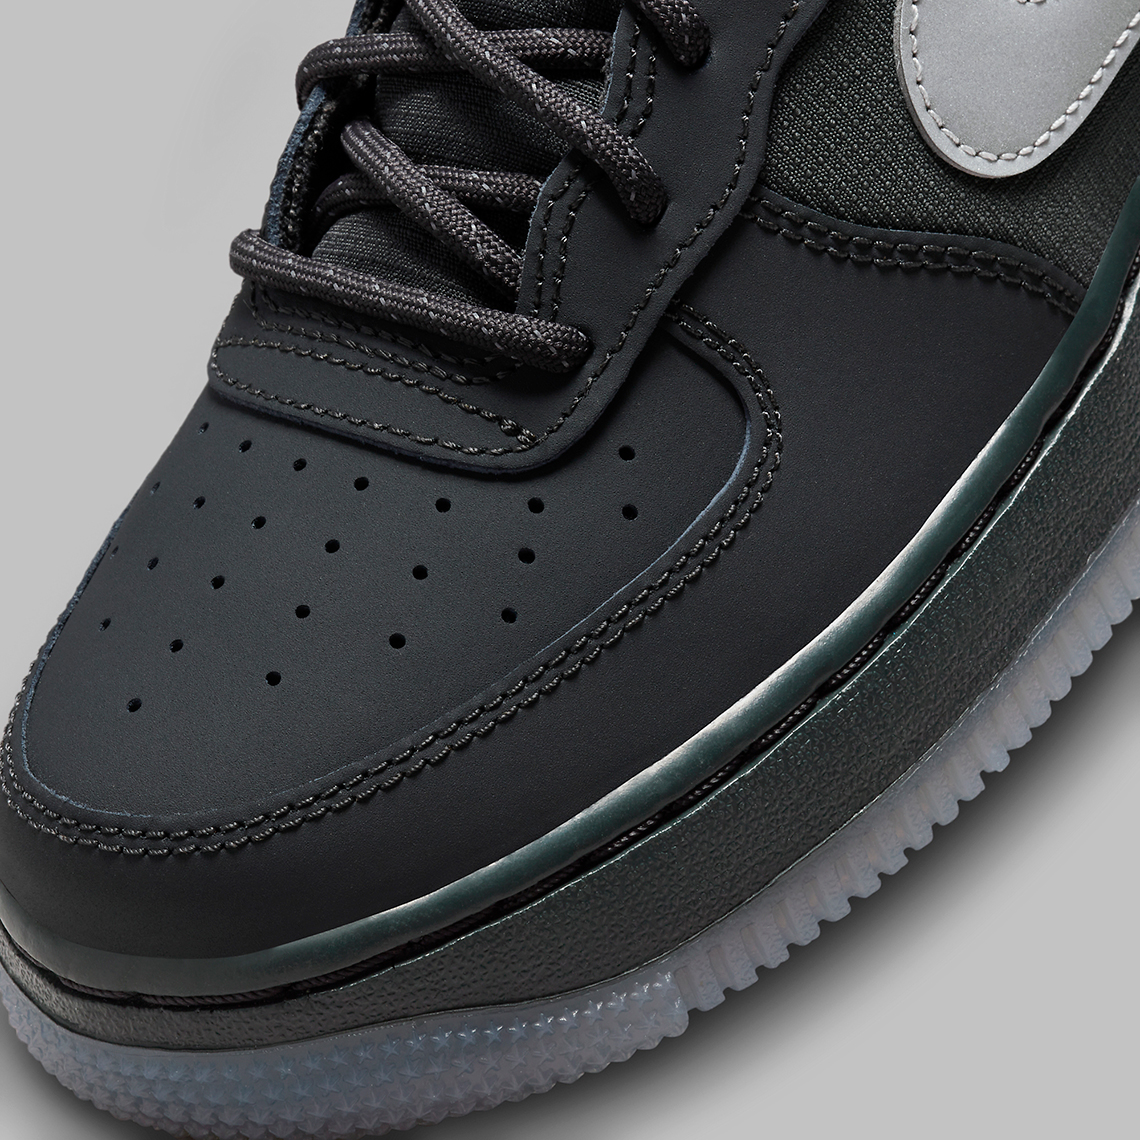 Nike Air Force 1 '07 LV8 Reflective Swoosh Black Crimson DZ4514-001  Men's Shoes